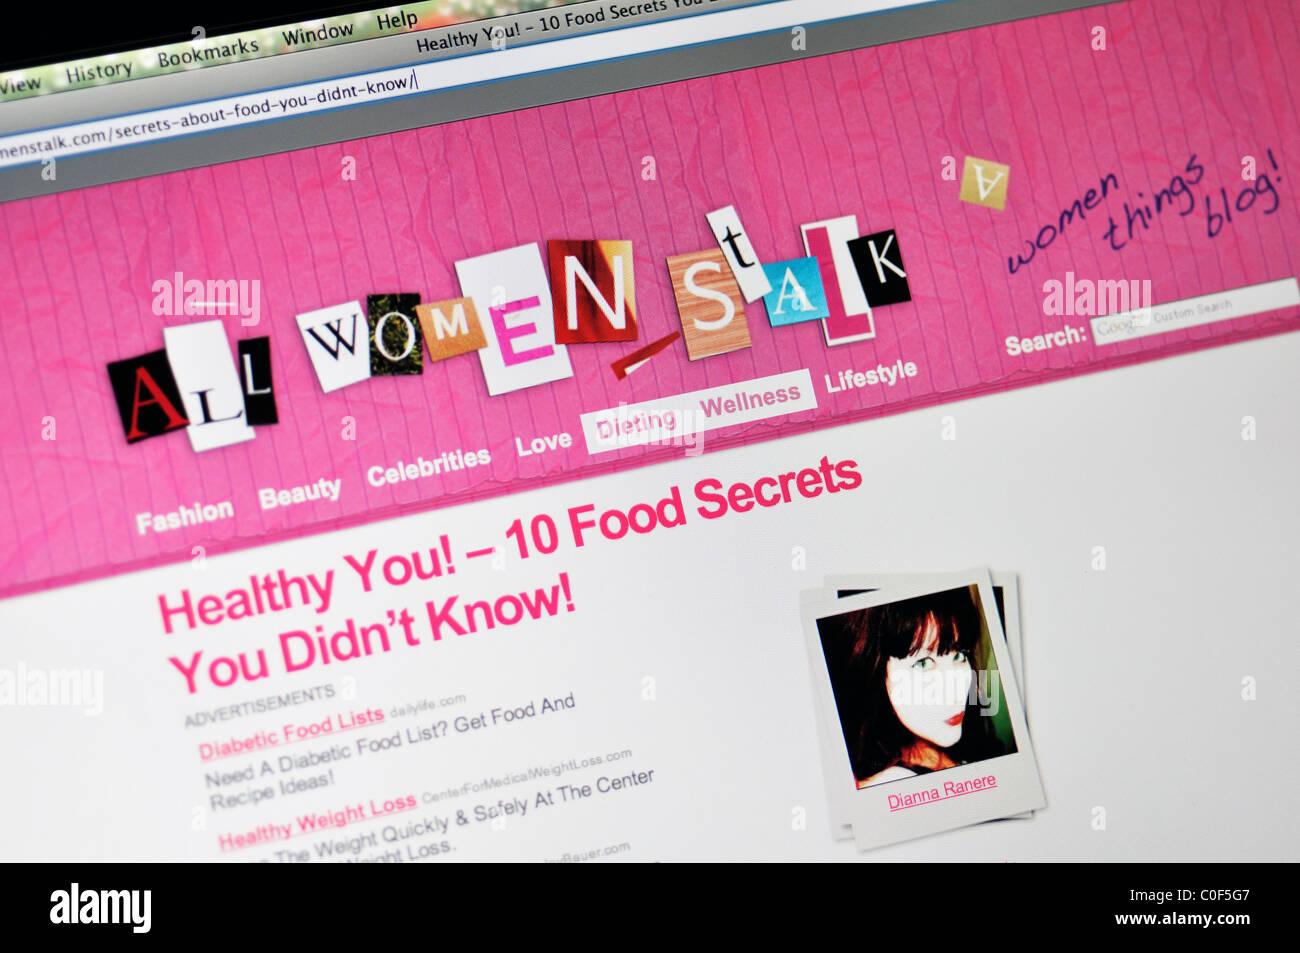 Sito web AllWomenStalk - Donne blog circa la bellezza, la salute e il fitness, i rapporti e la vita familiare, la moda e le altre ragazze stuff Foto Stock